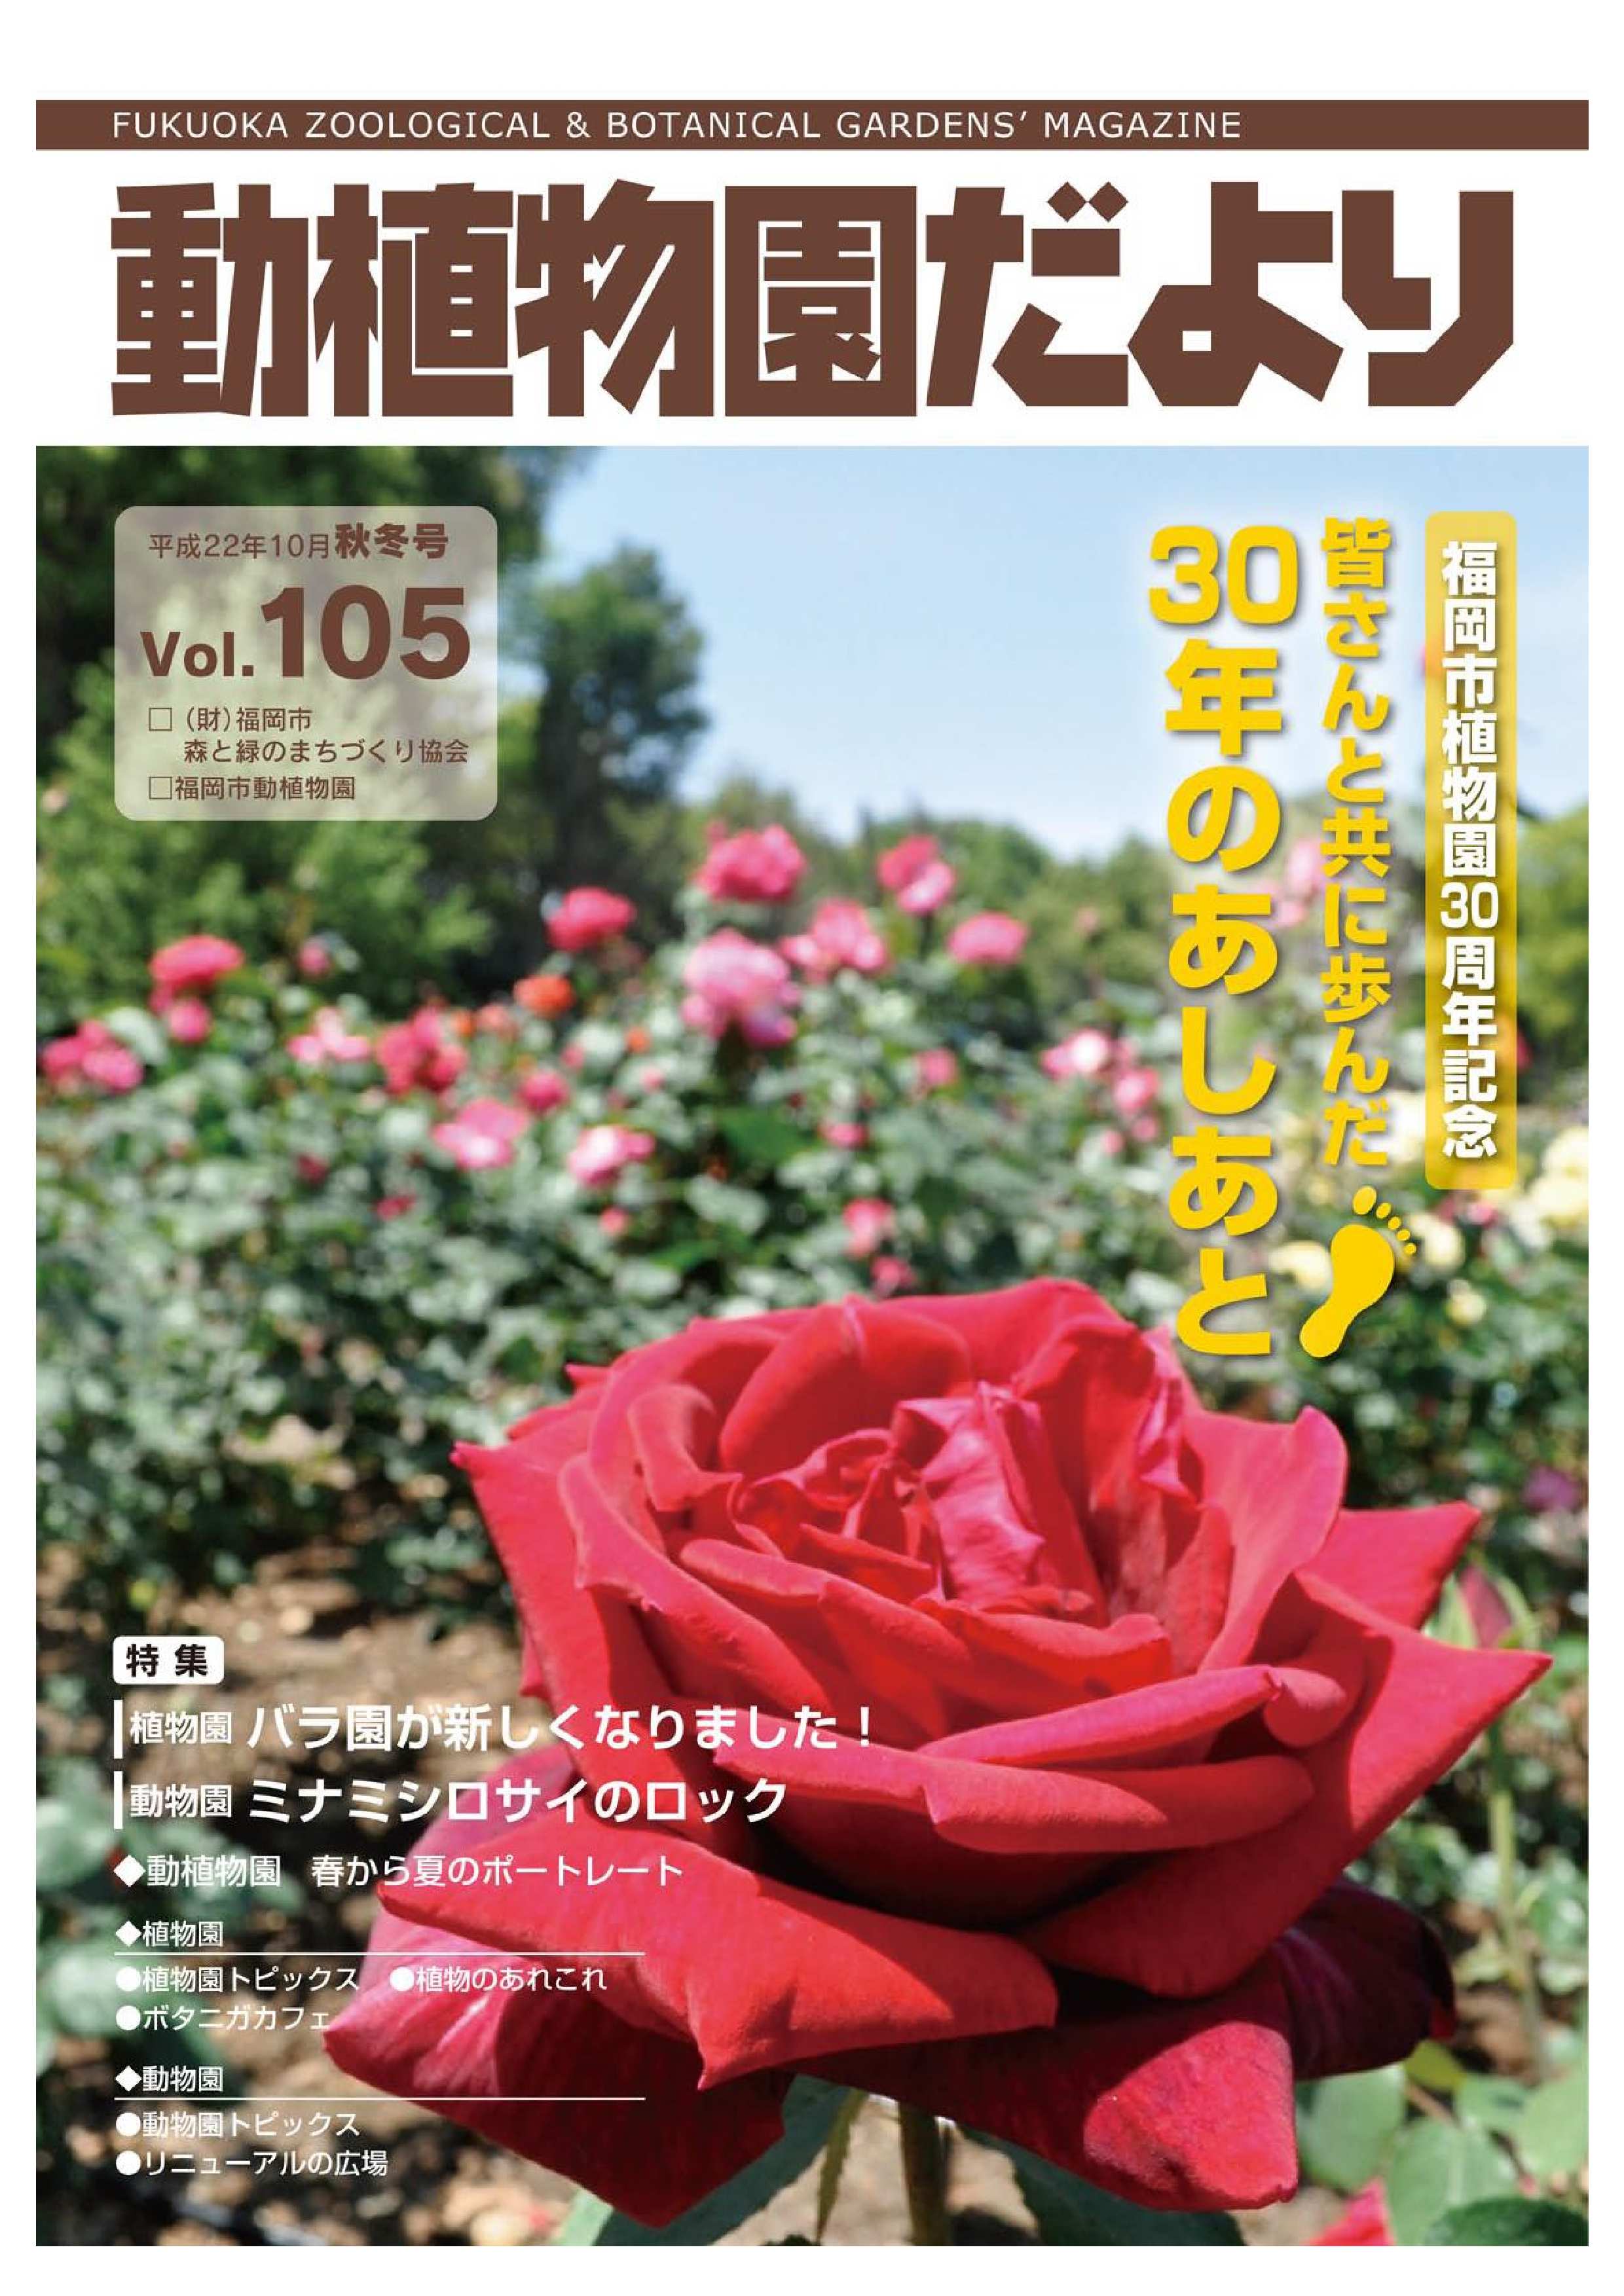 Vol.105 平成22年10月秋冬号